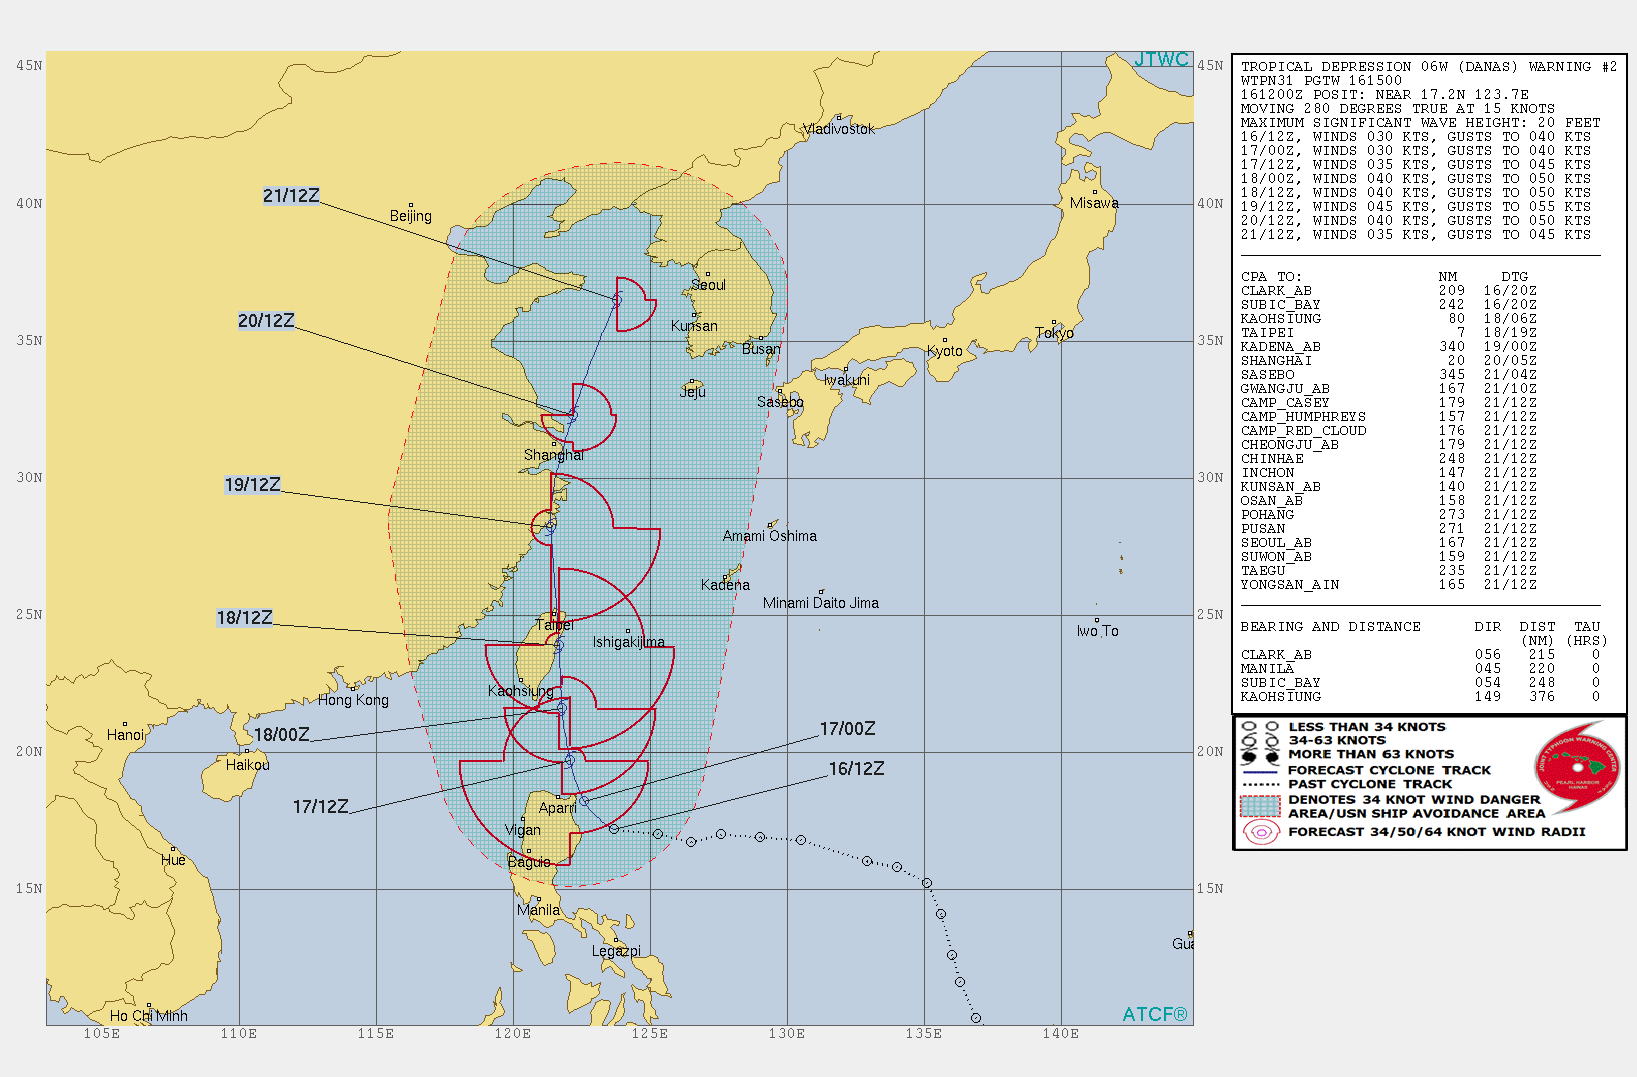 WARNING 2/JTWC. PEAK INTENSITY OF 45KNOTS IS FORECAST IN 72H